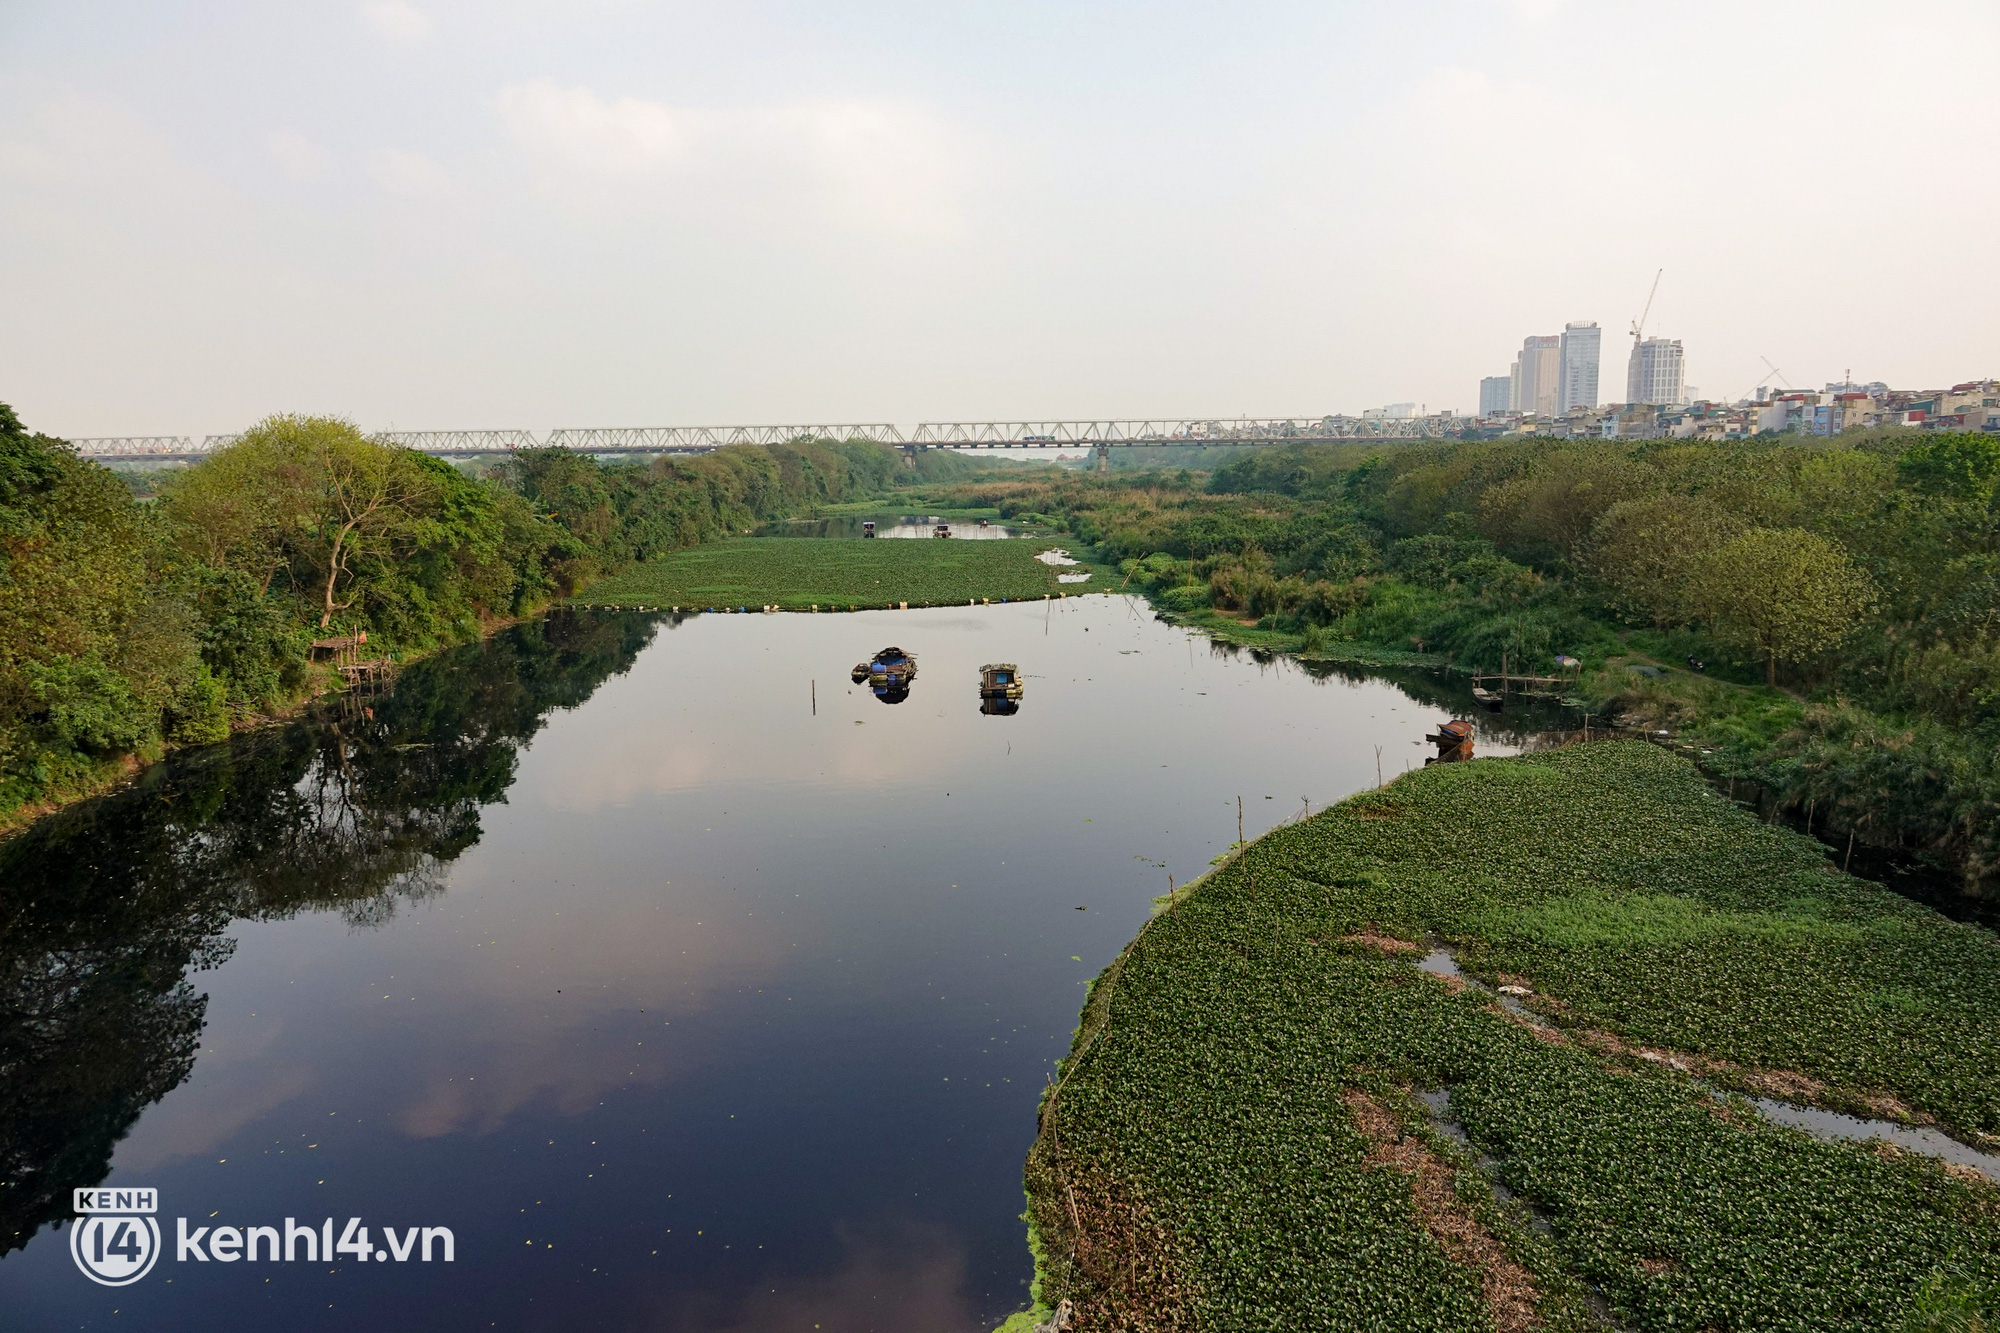 Hà Nội: Cận cảnh vẻ đẹp hoang sơ của bãi giữa sông Hồng được đề xuất cải tạo thành công viên - Ảnh 4.